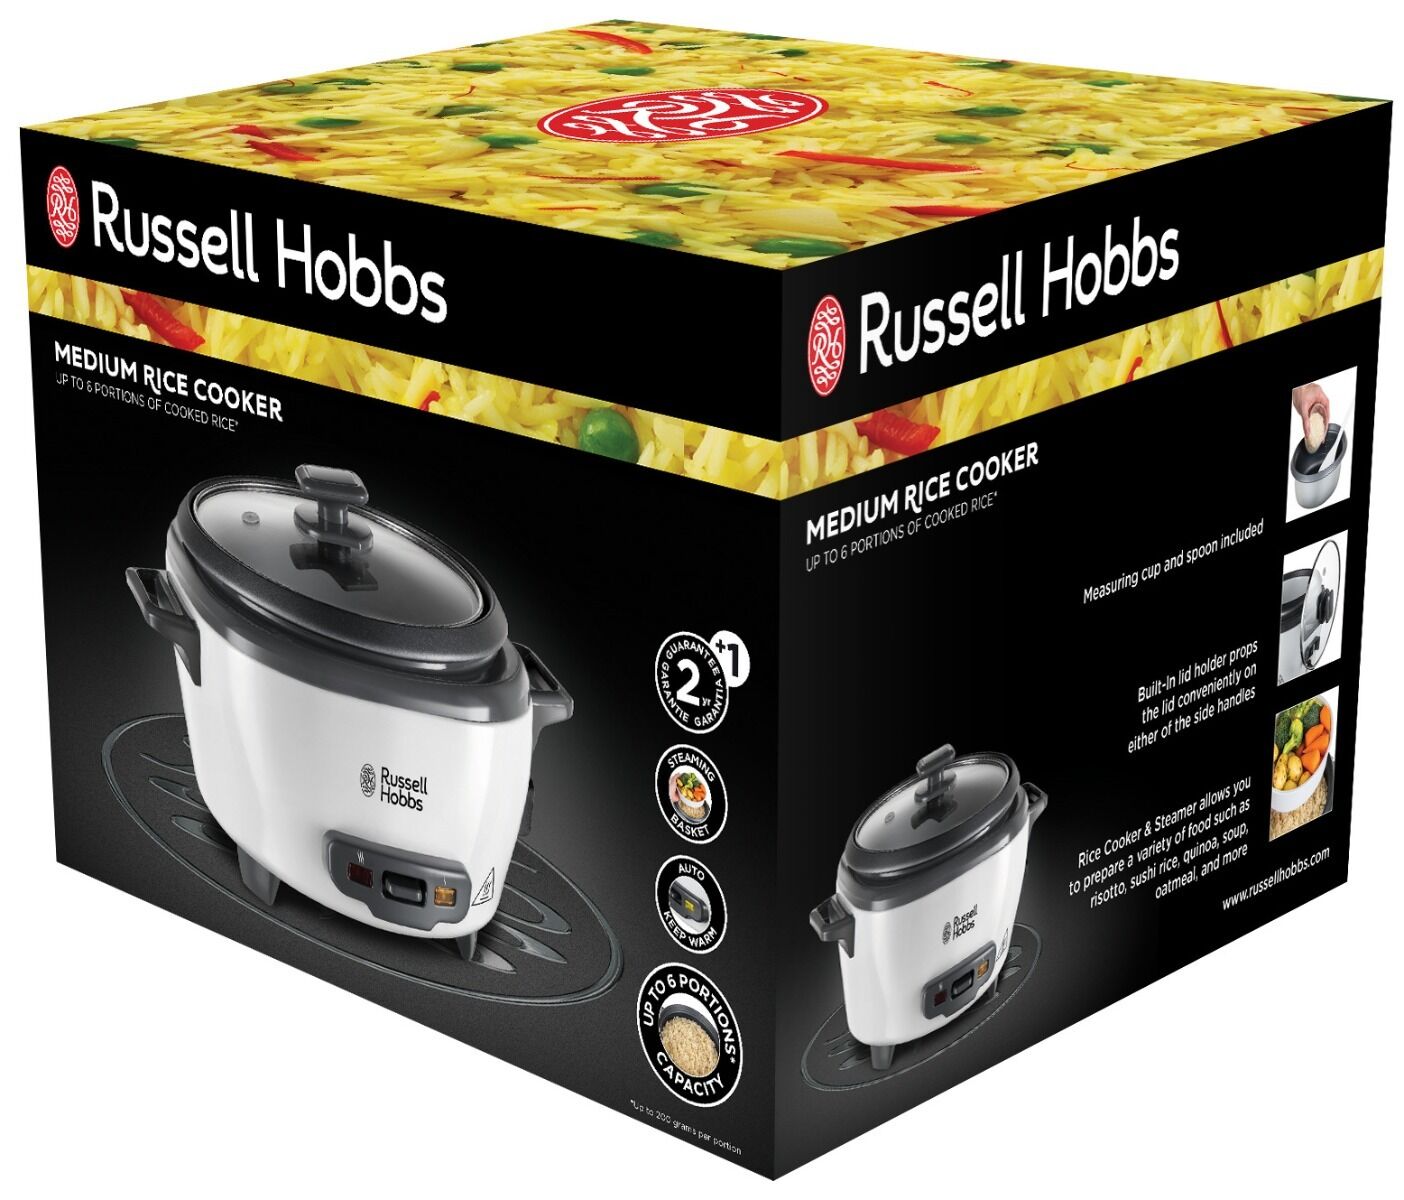 Aparat de gatit orez Russell Hobbs Medium 27030-56, 300 W, 1.4 L, mentinere automata la cald, alb/negru